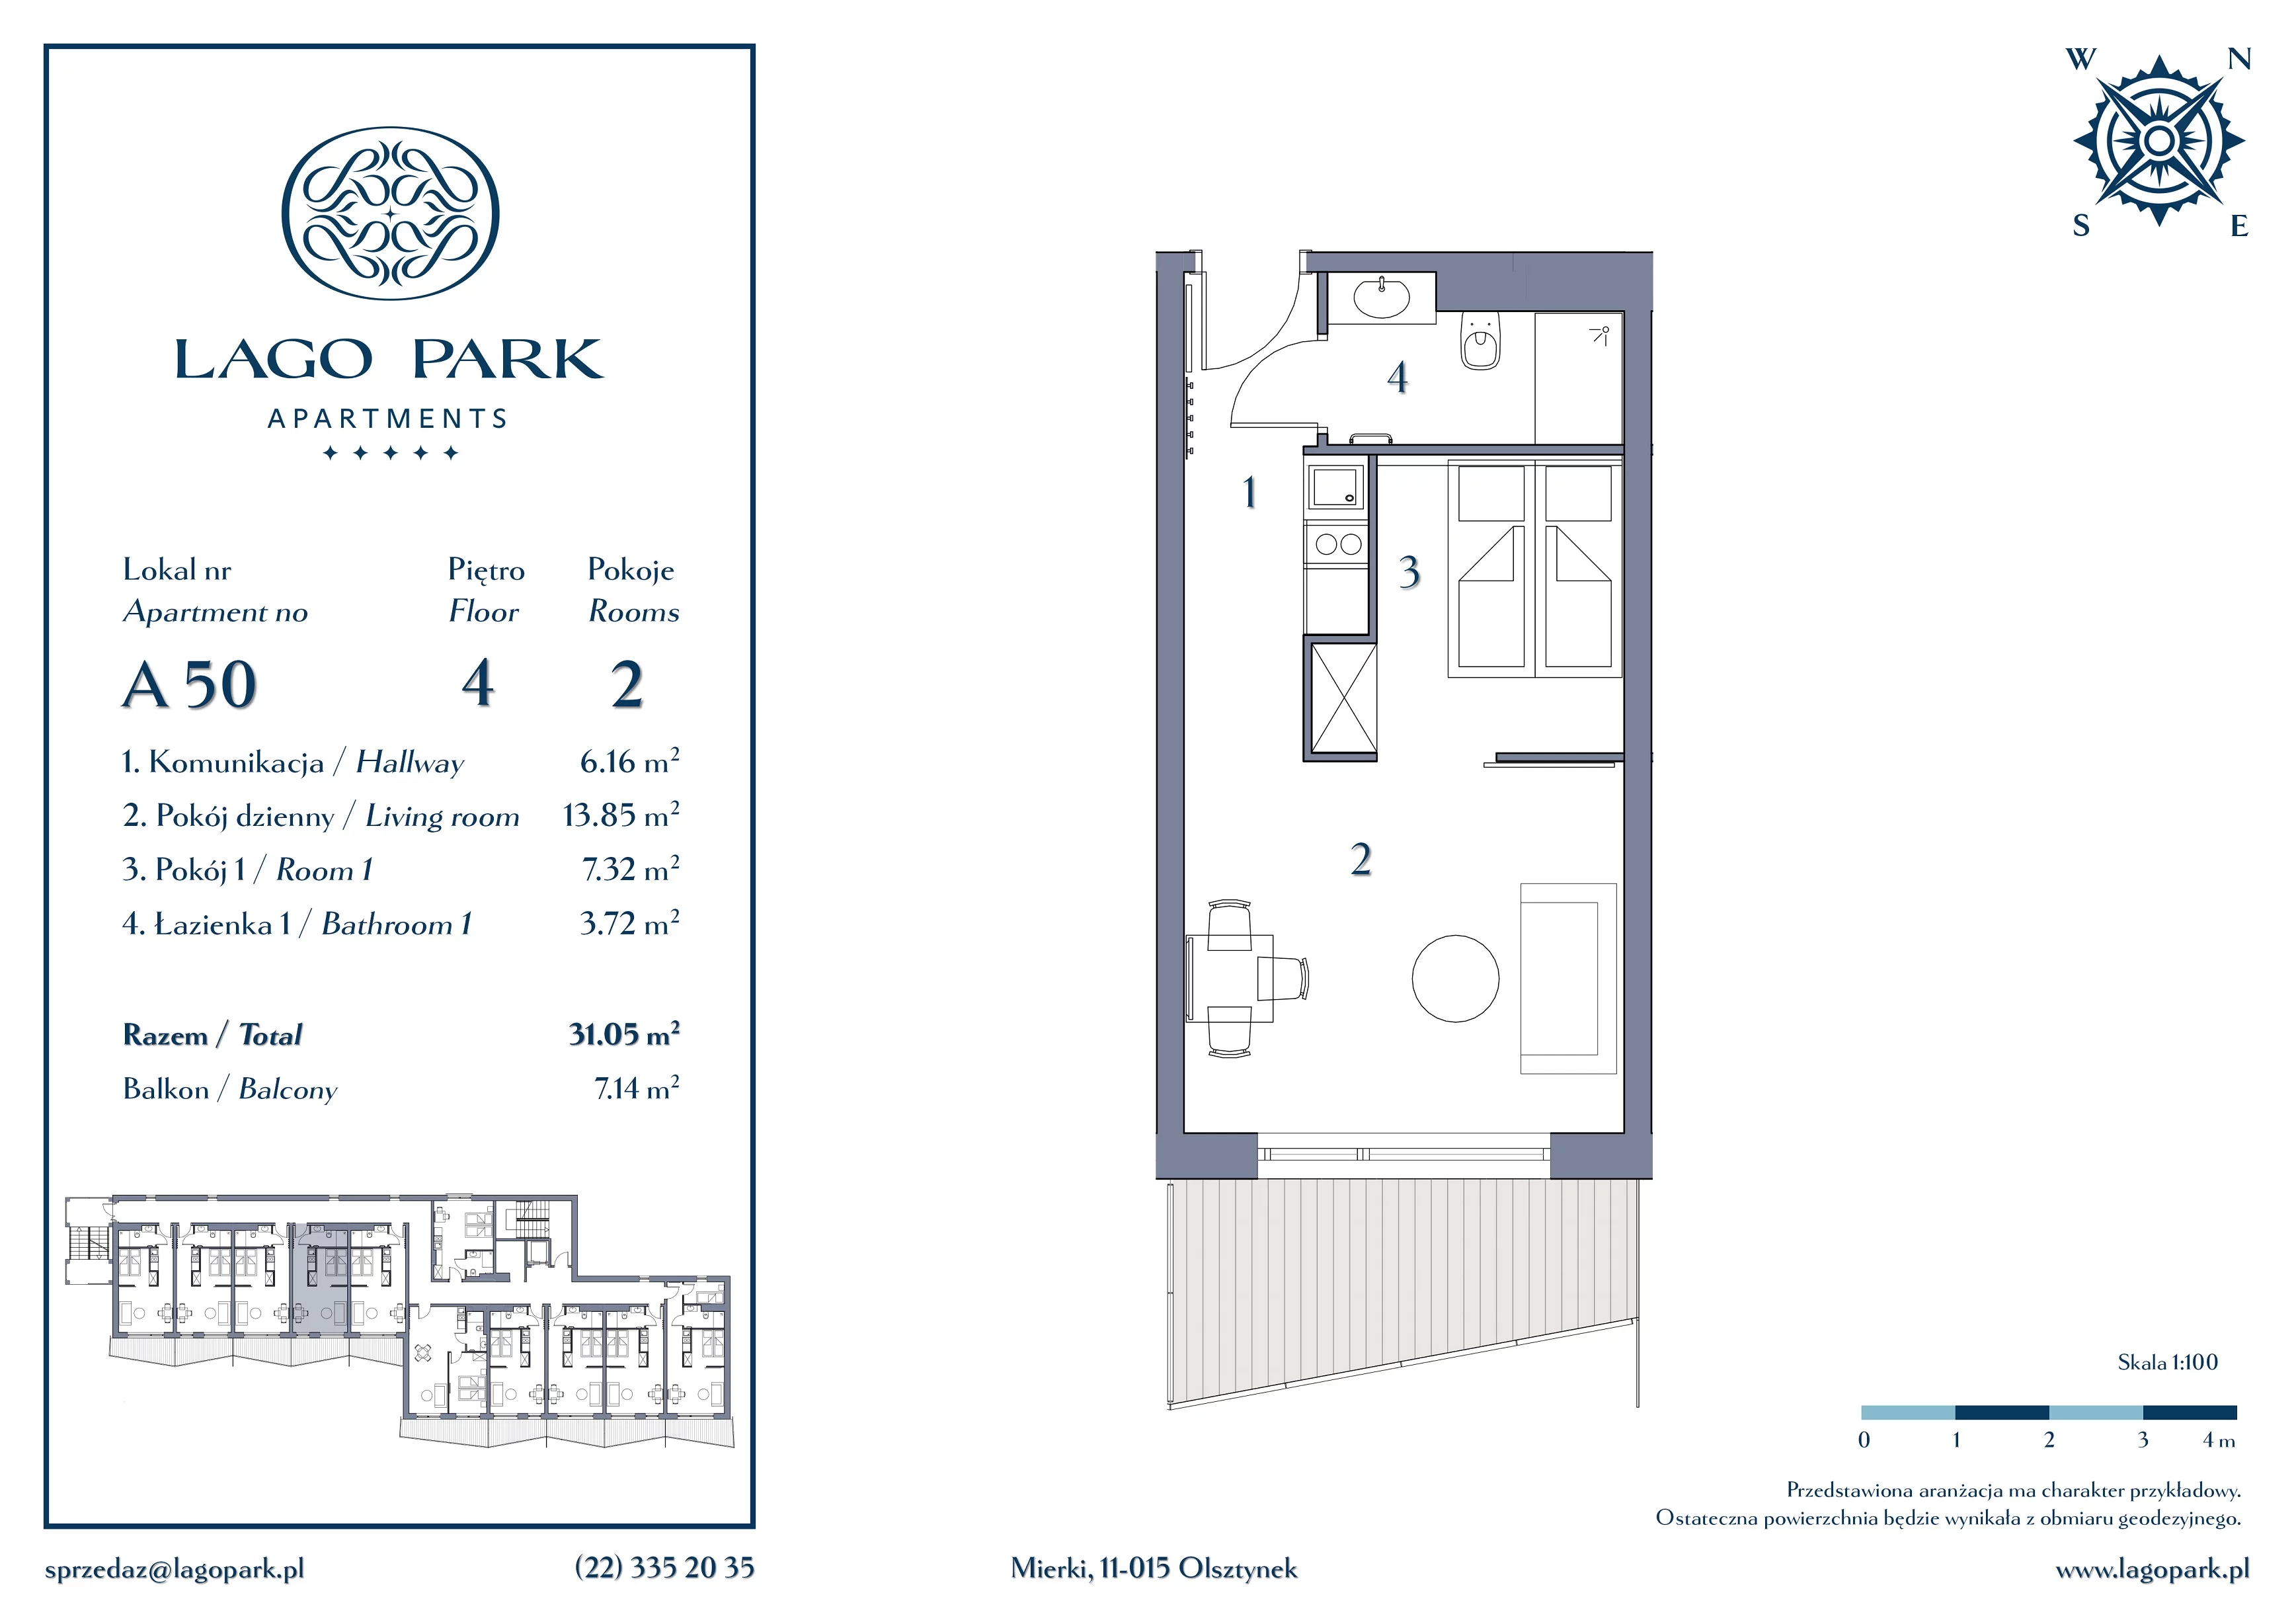 Apartament inwestycyjny 31,05 m², piętro 4, oferta nr A50, Lago Park Apartments by Aries, Mierki, Kołatek 2